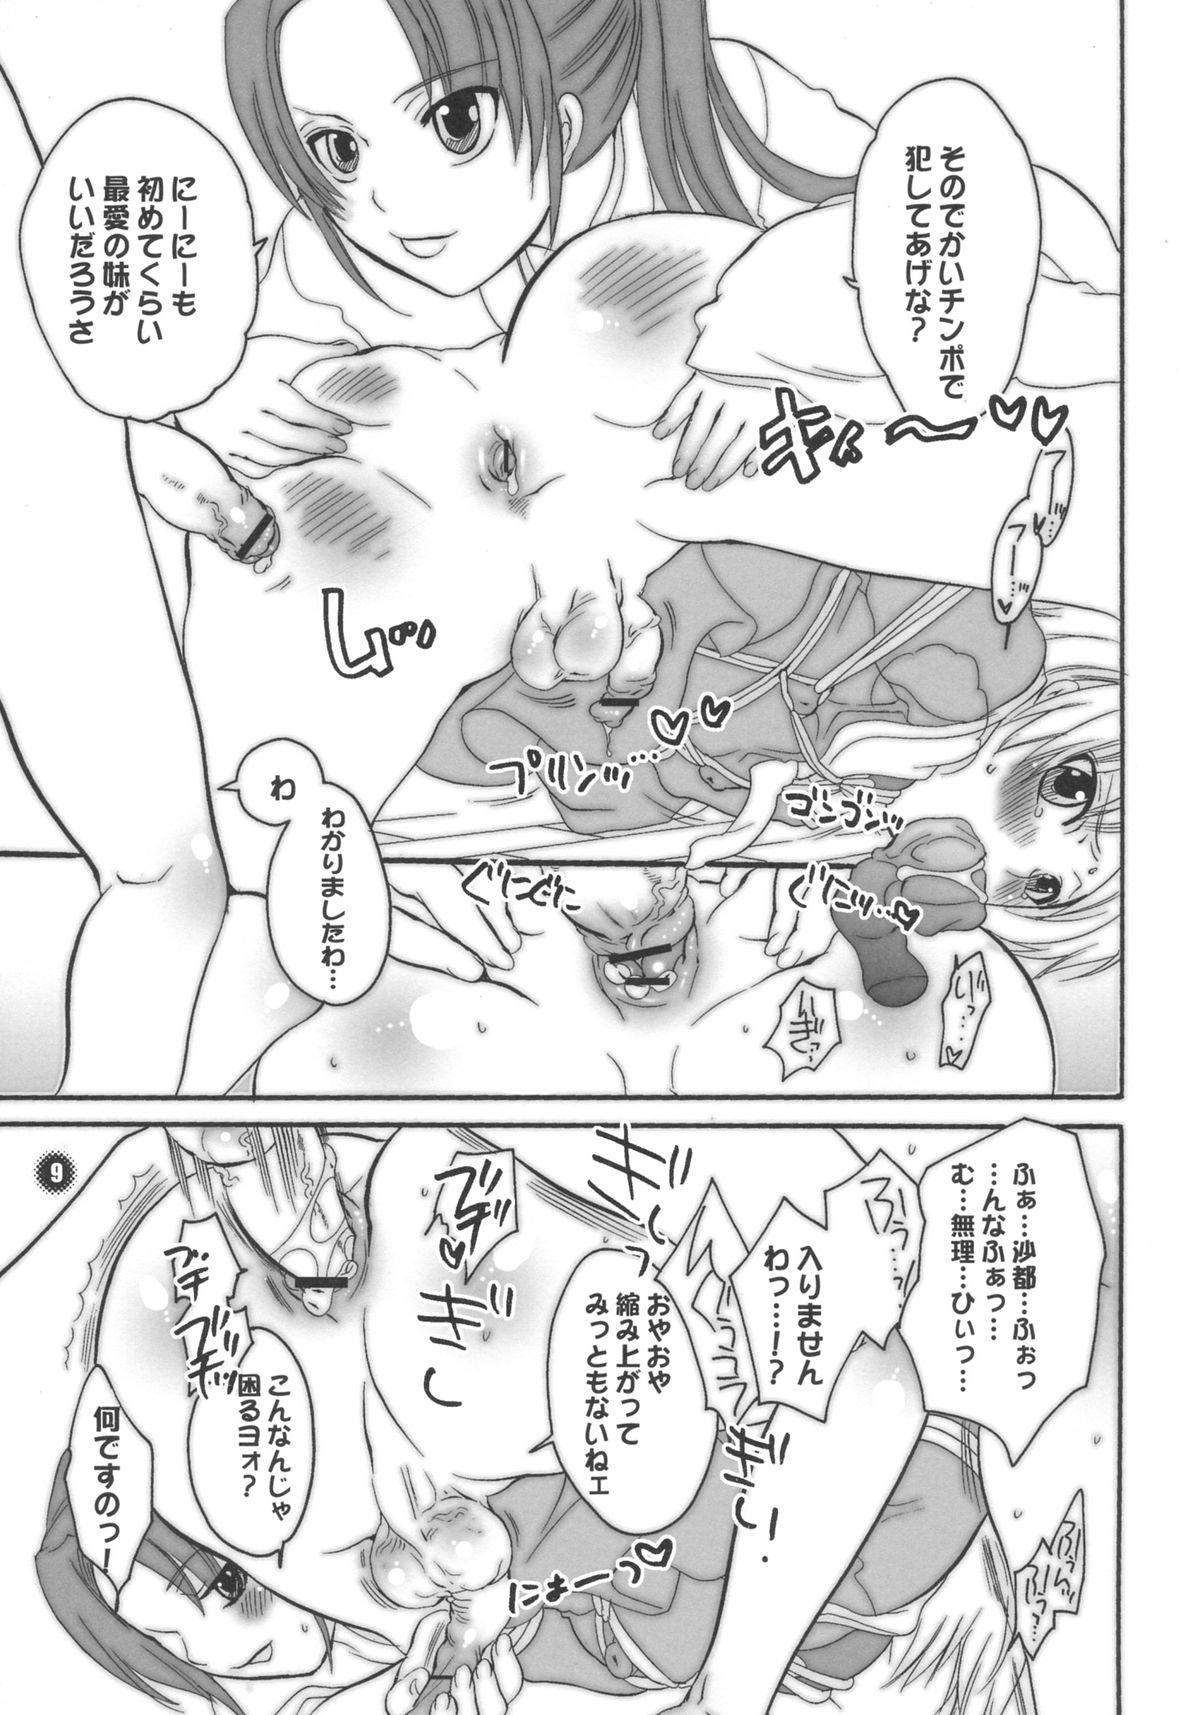 Jeune Mec M-o. o Produce Extra 2 - Higurashi no naku koro ni Camwhore - Page 9